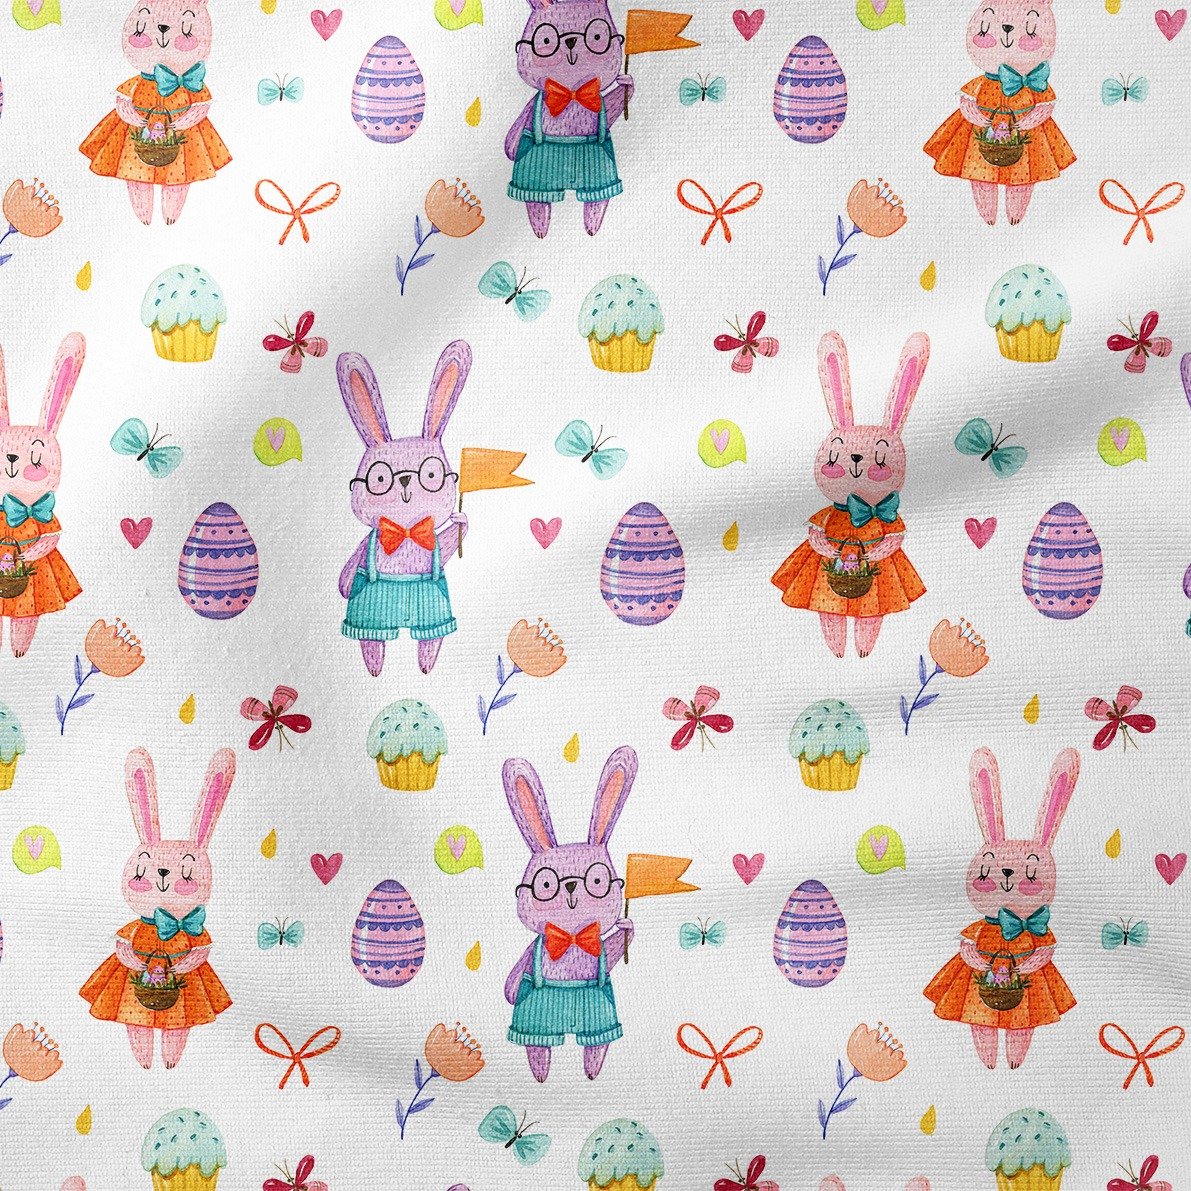 Happy Easter- Paskalya Yumurtaları, Kelebekleri, Muffin Tatlılar ve Kostümlü Sevimli Tavşanlar Desenli Tasarım Kumaş